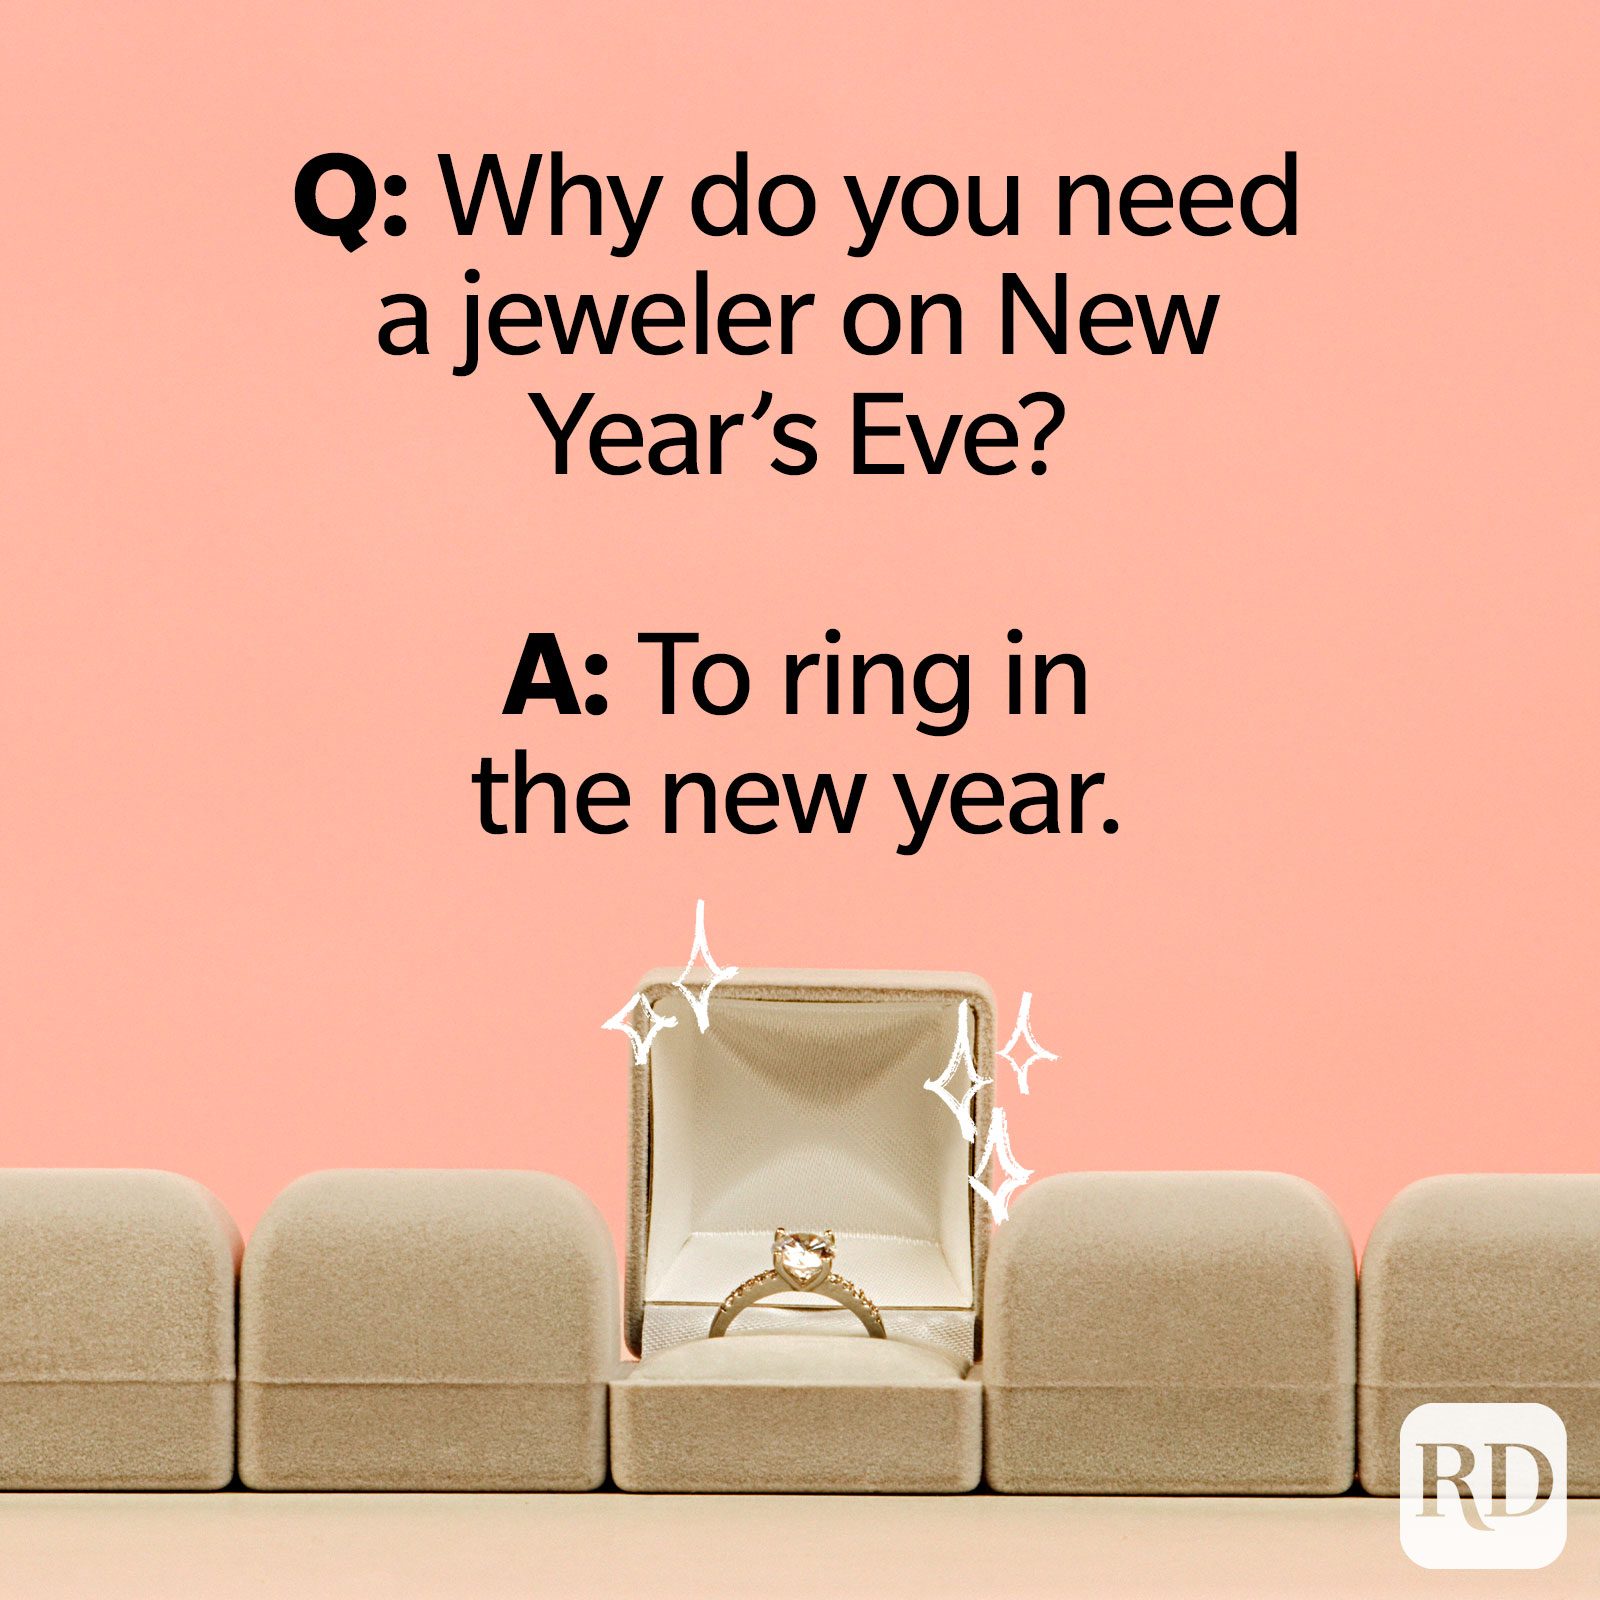 Por qué necesitas un joyero en Nochevieja? R: Para dar las campanadas del nuevo año.